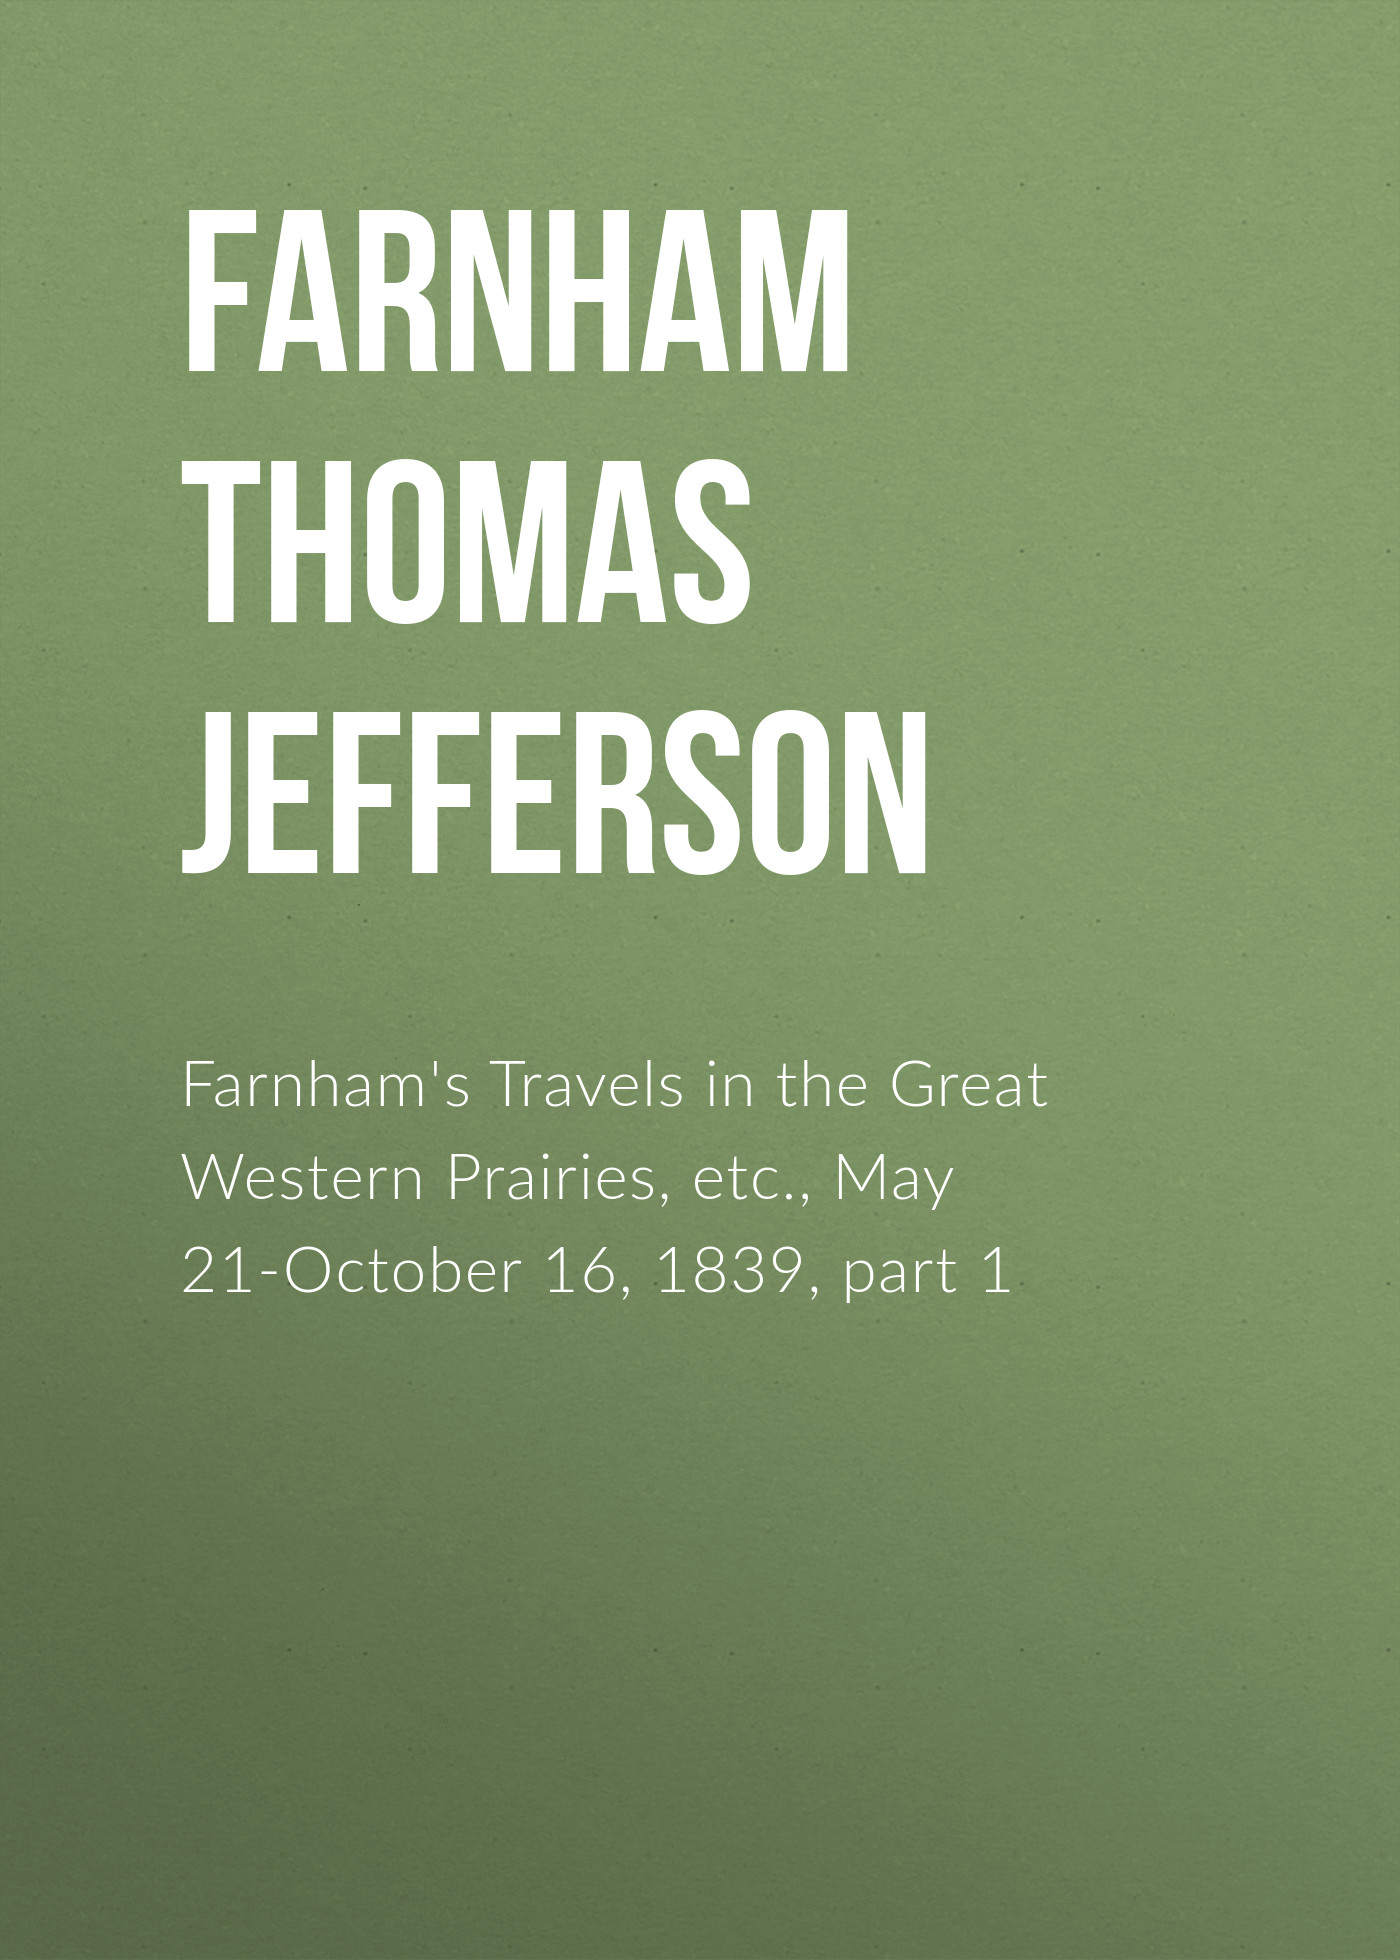 Книга Farnham's Travels in the Great Western Prairies, etc., May 21-October 16, 1839, part 1 из серии , созданная Thomas Farnham, может относится к жанру Зарубежная старинная литература, Зарубежная классика, Книги о Путешествиях. Стоимость электронной книги Farnham's Travels in the Great Western Prairies, etc., May 21-October 16, 1839, part 1 с идентификатором 24713265 составляет 0 руб.